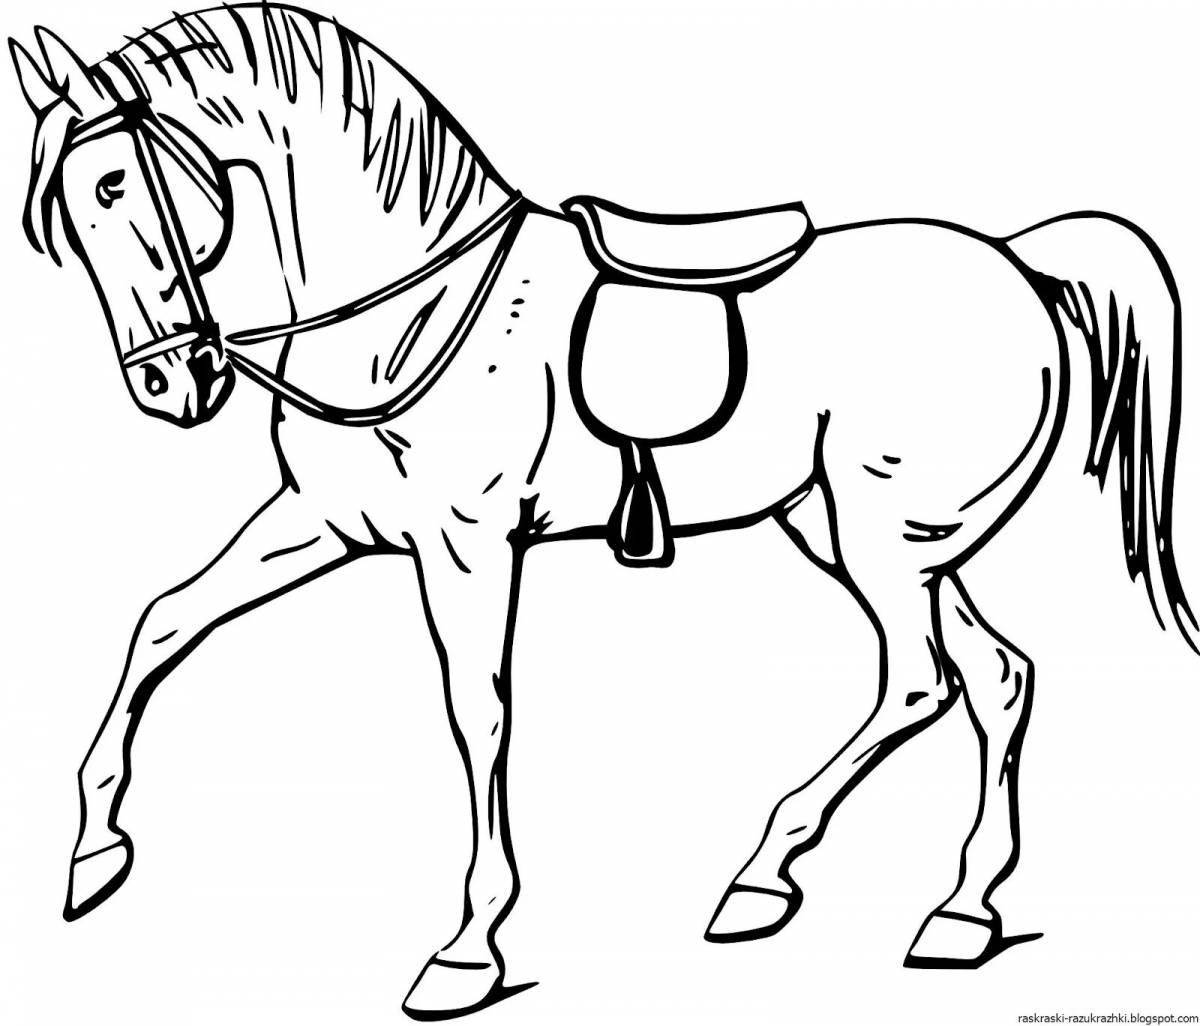 Раскраска энергичная четвертьлошадь лошадь для детей